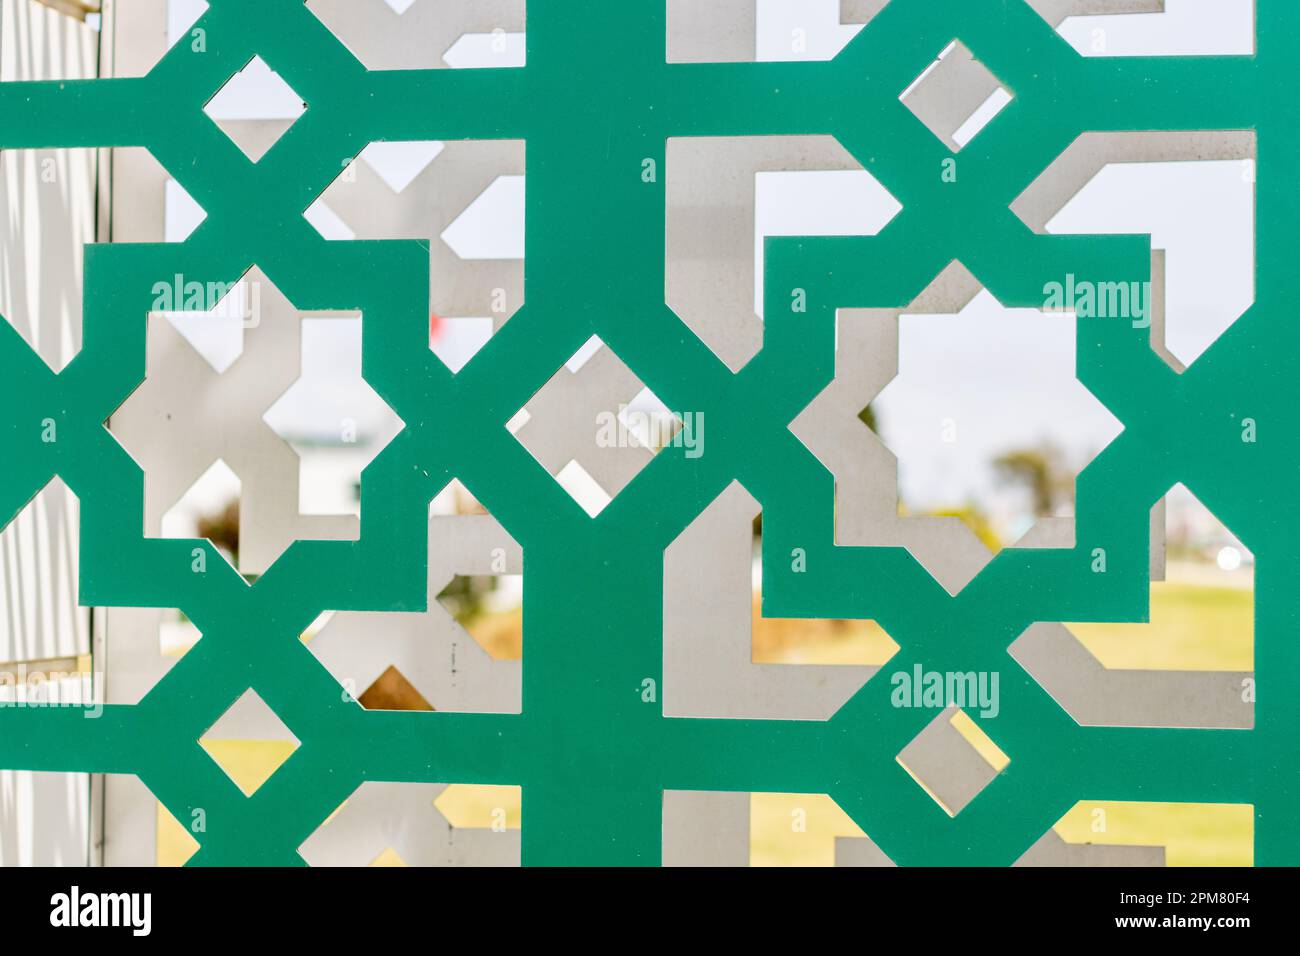 Dekoratives, grünes Metallgitter mit Arabesque-Design Stockfoto